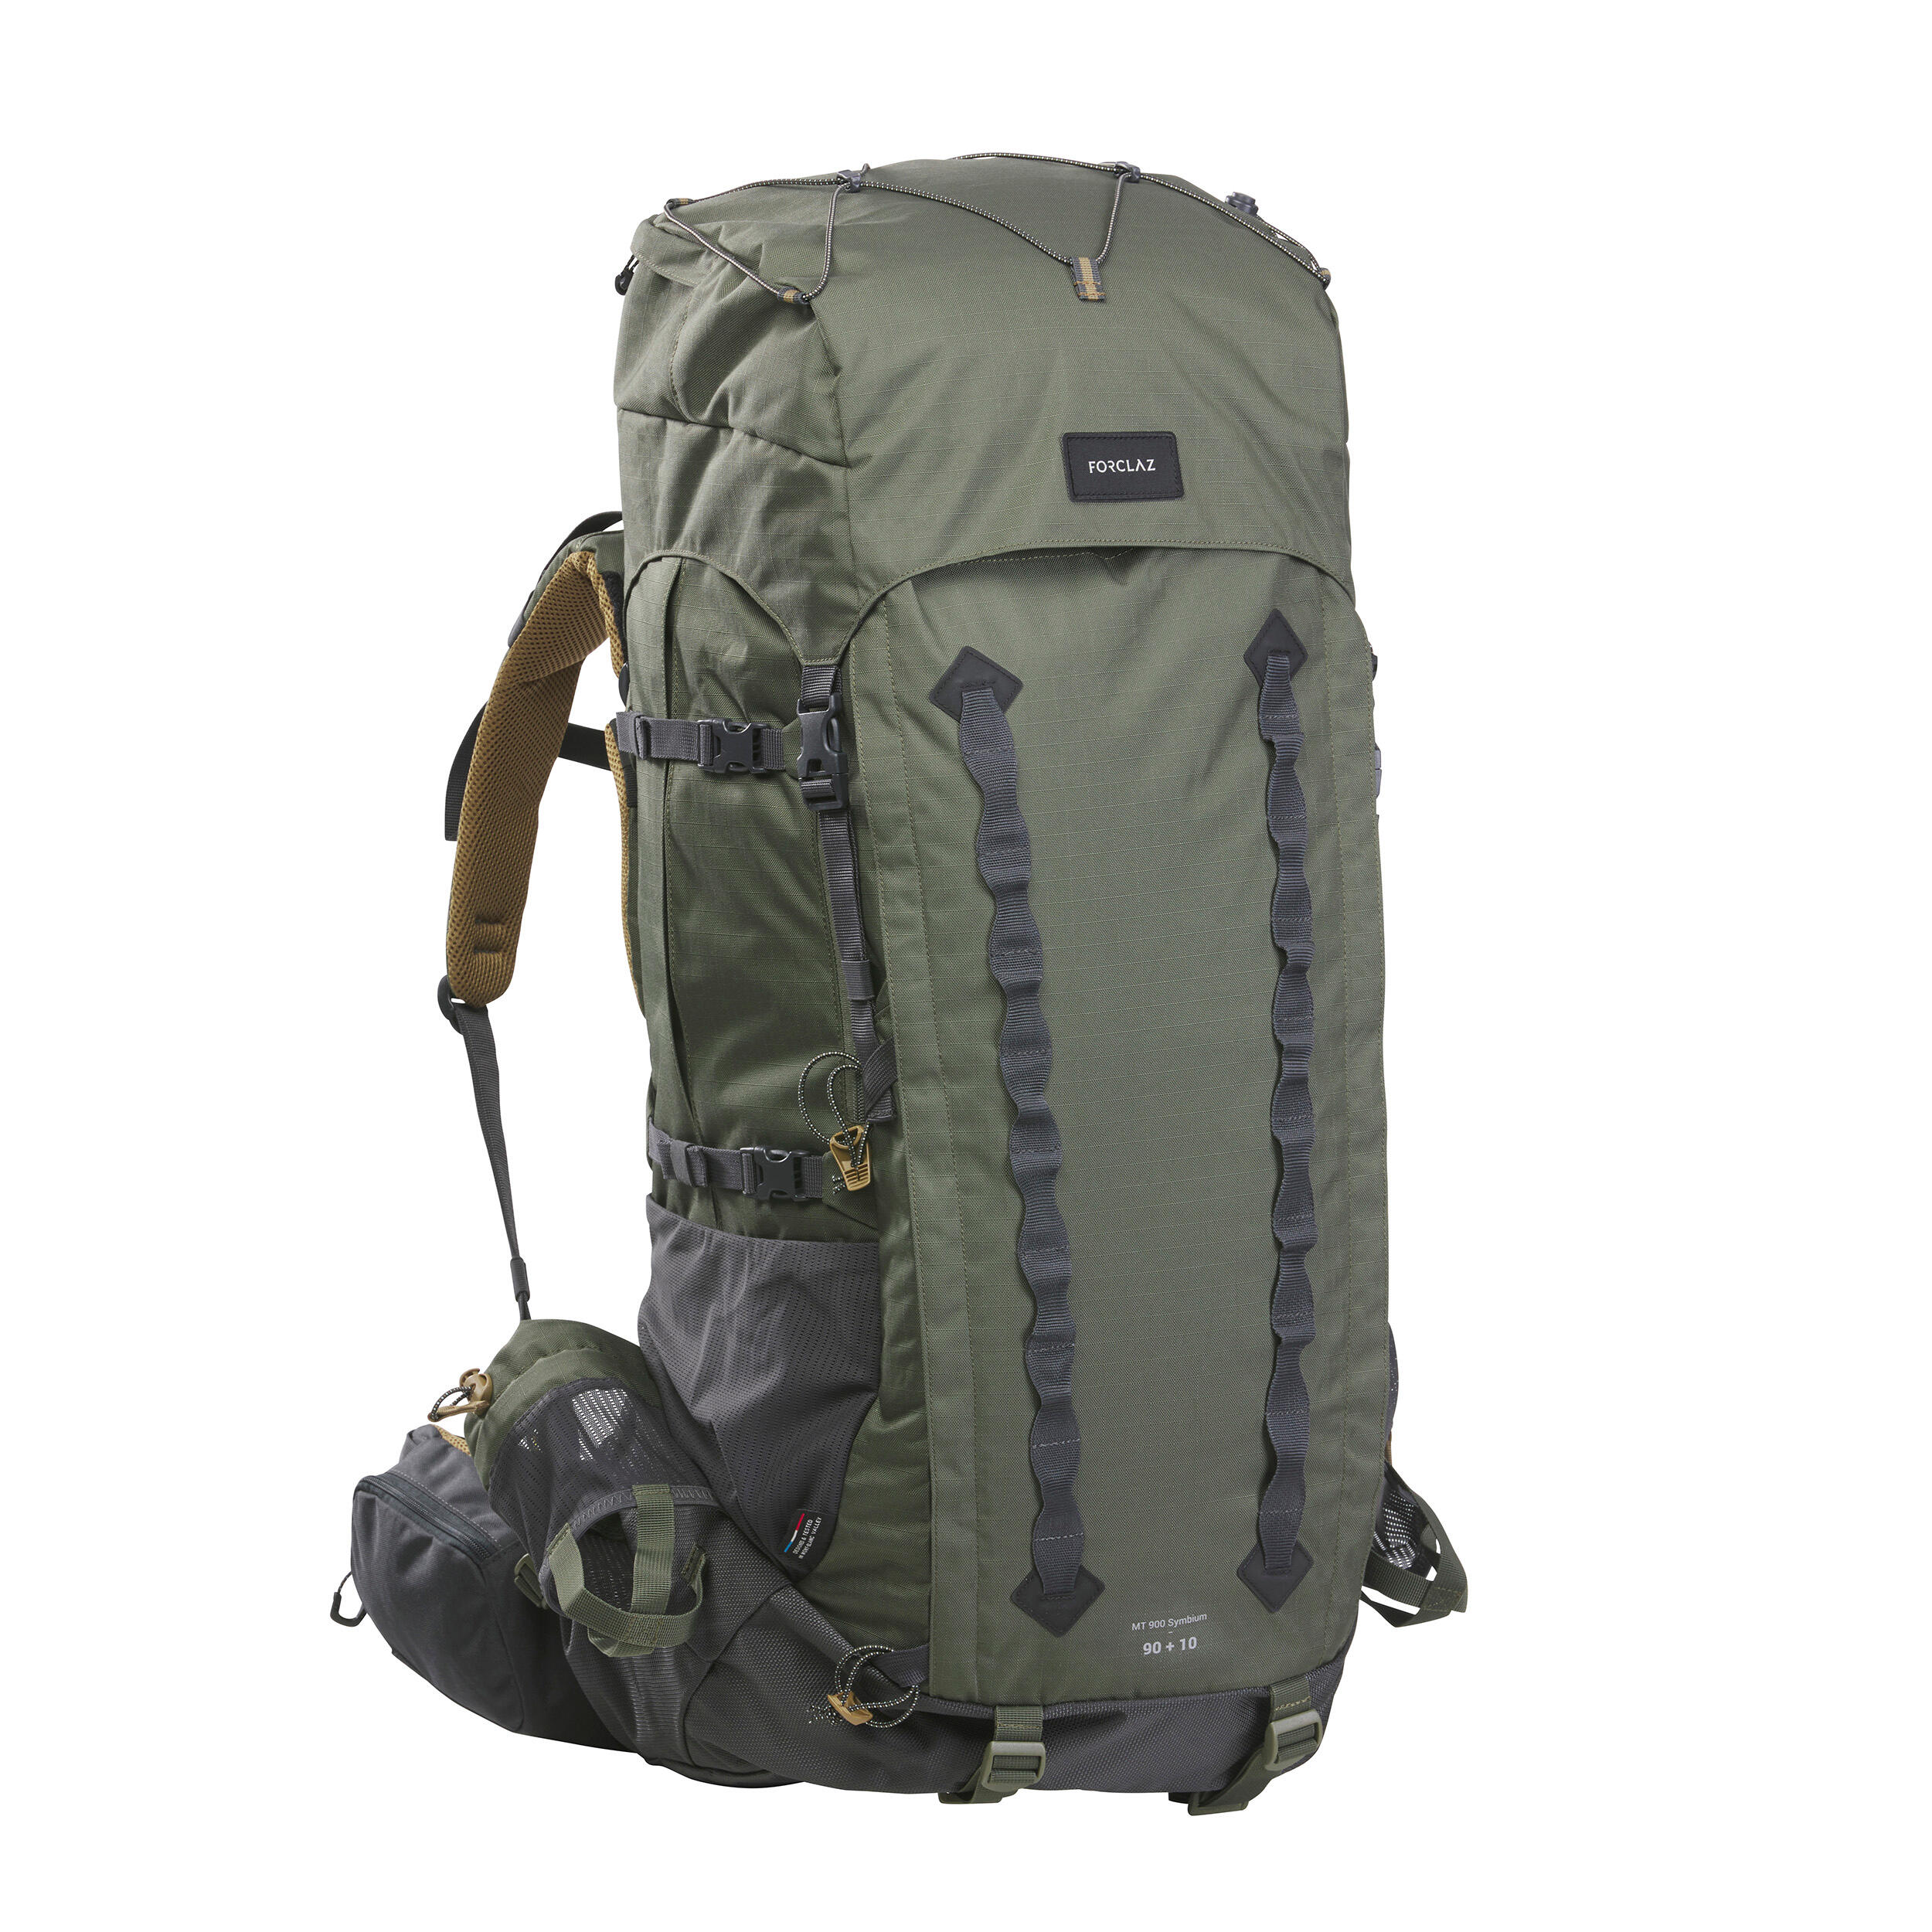 10L Ultra Lightweight Backpack Casual Daypack for Men Women Kids Water Resistant Trekking Rucksack for Travel Outdoor Activities 